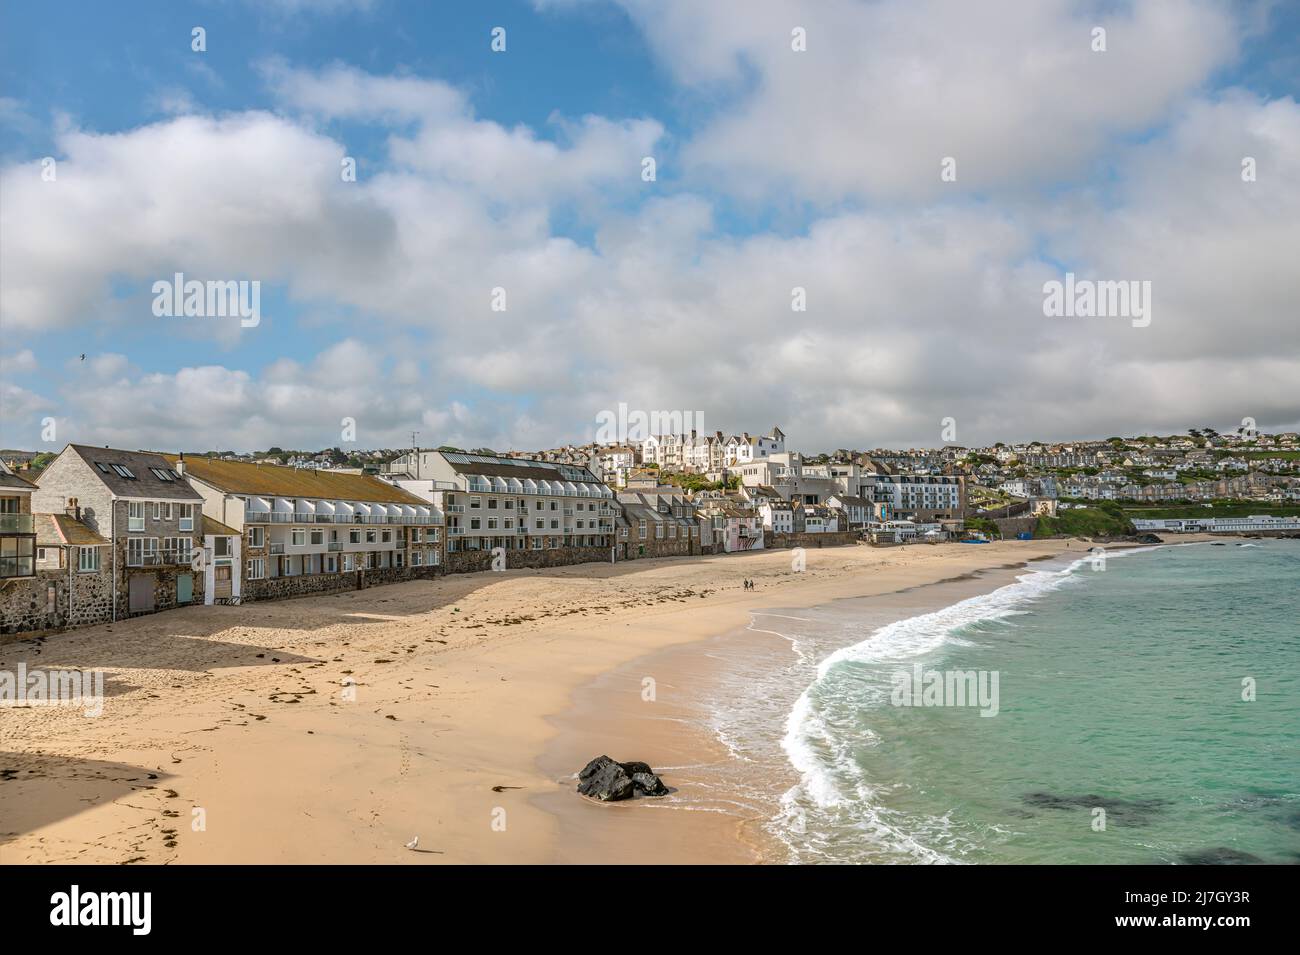 Vue sur la plage de Porthmeor, St Ives, Cornwall, Angleterre, Royaume-Uni Banque D'Images